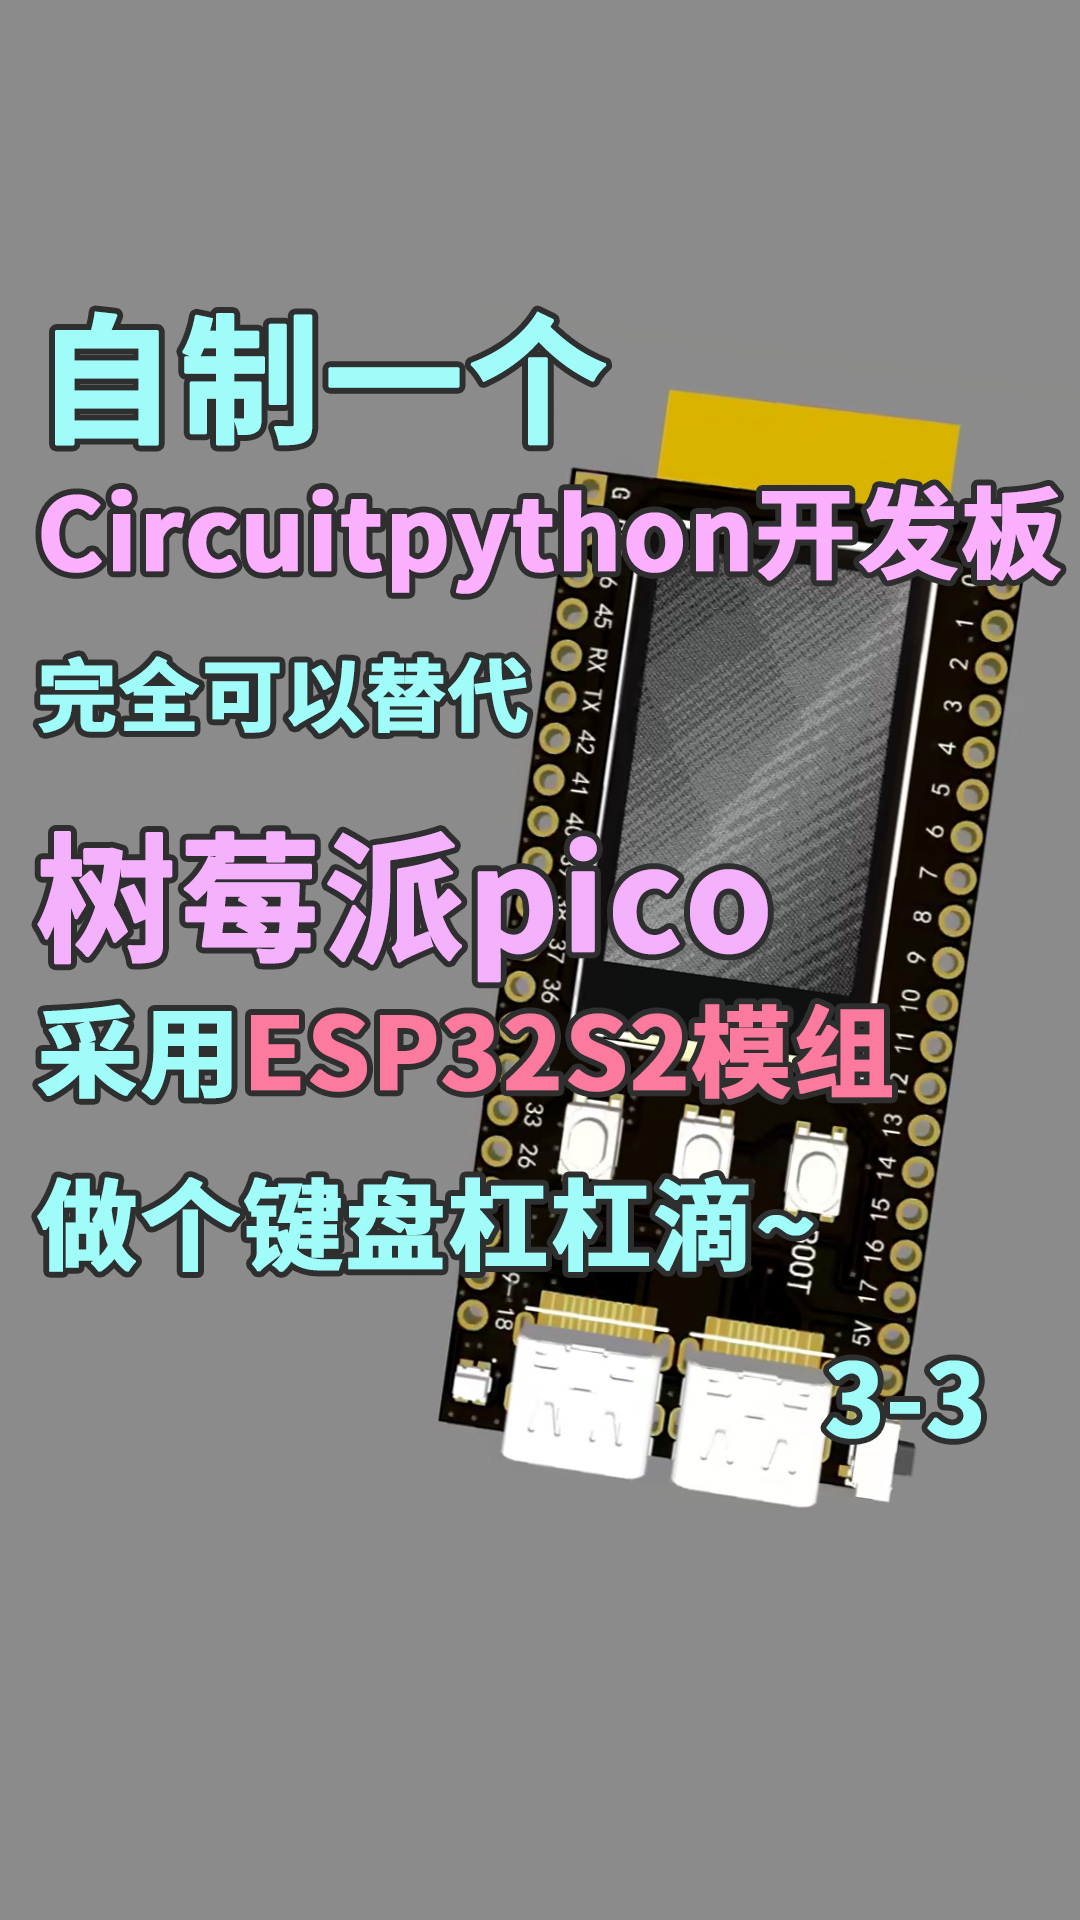 自制Circuitpython開發板，完全替代樹莓派pico，采用ESP32S2模組3-3#樹莓派 